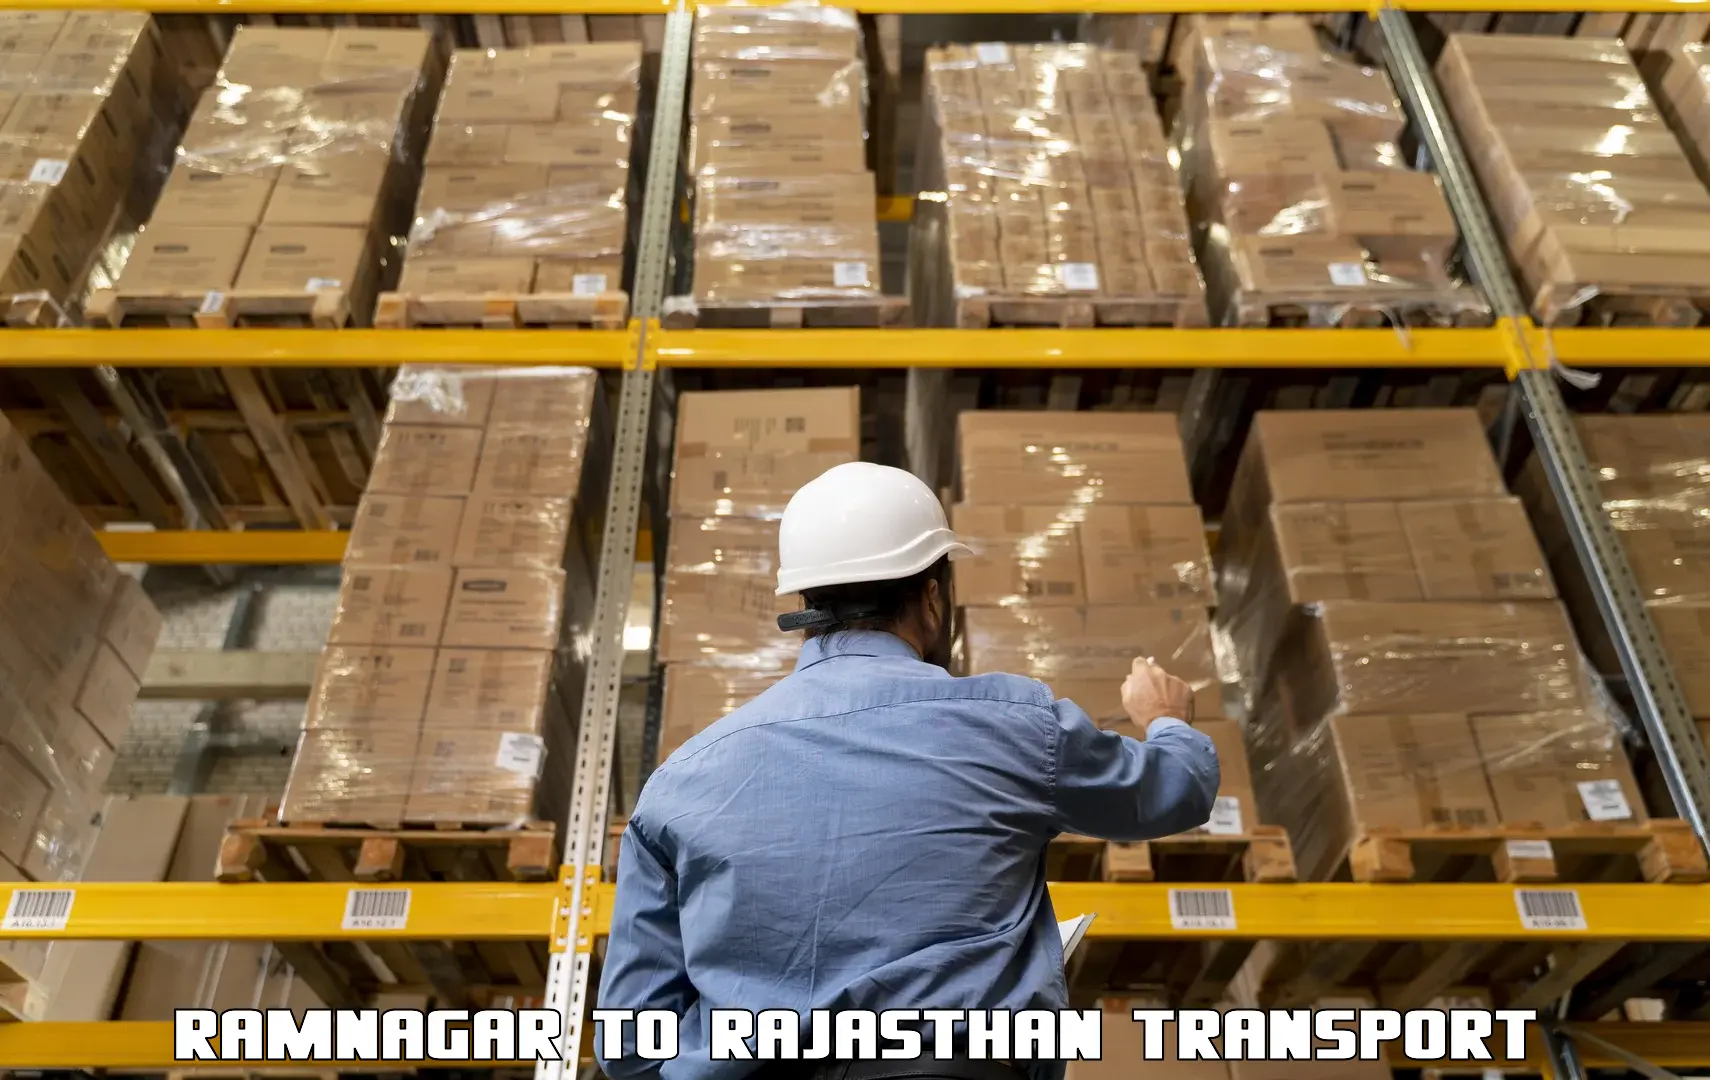 Furniture transport service Ramnagar to Pratapgarh Rajasthan